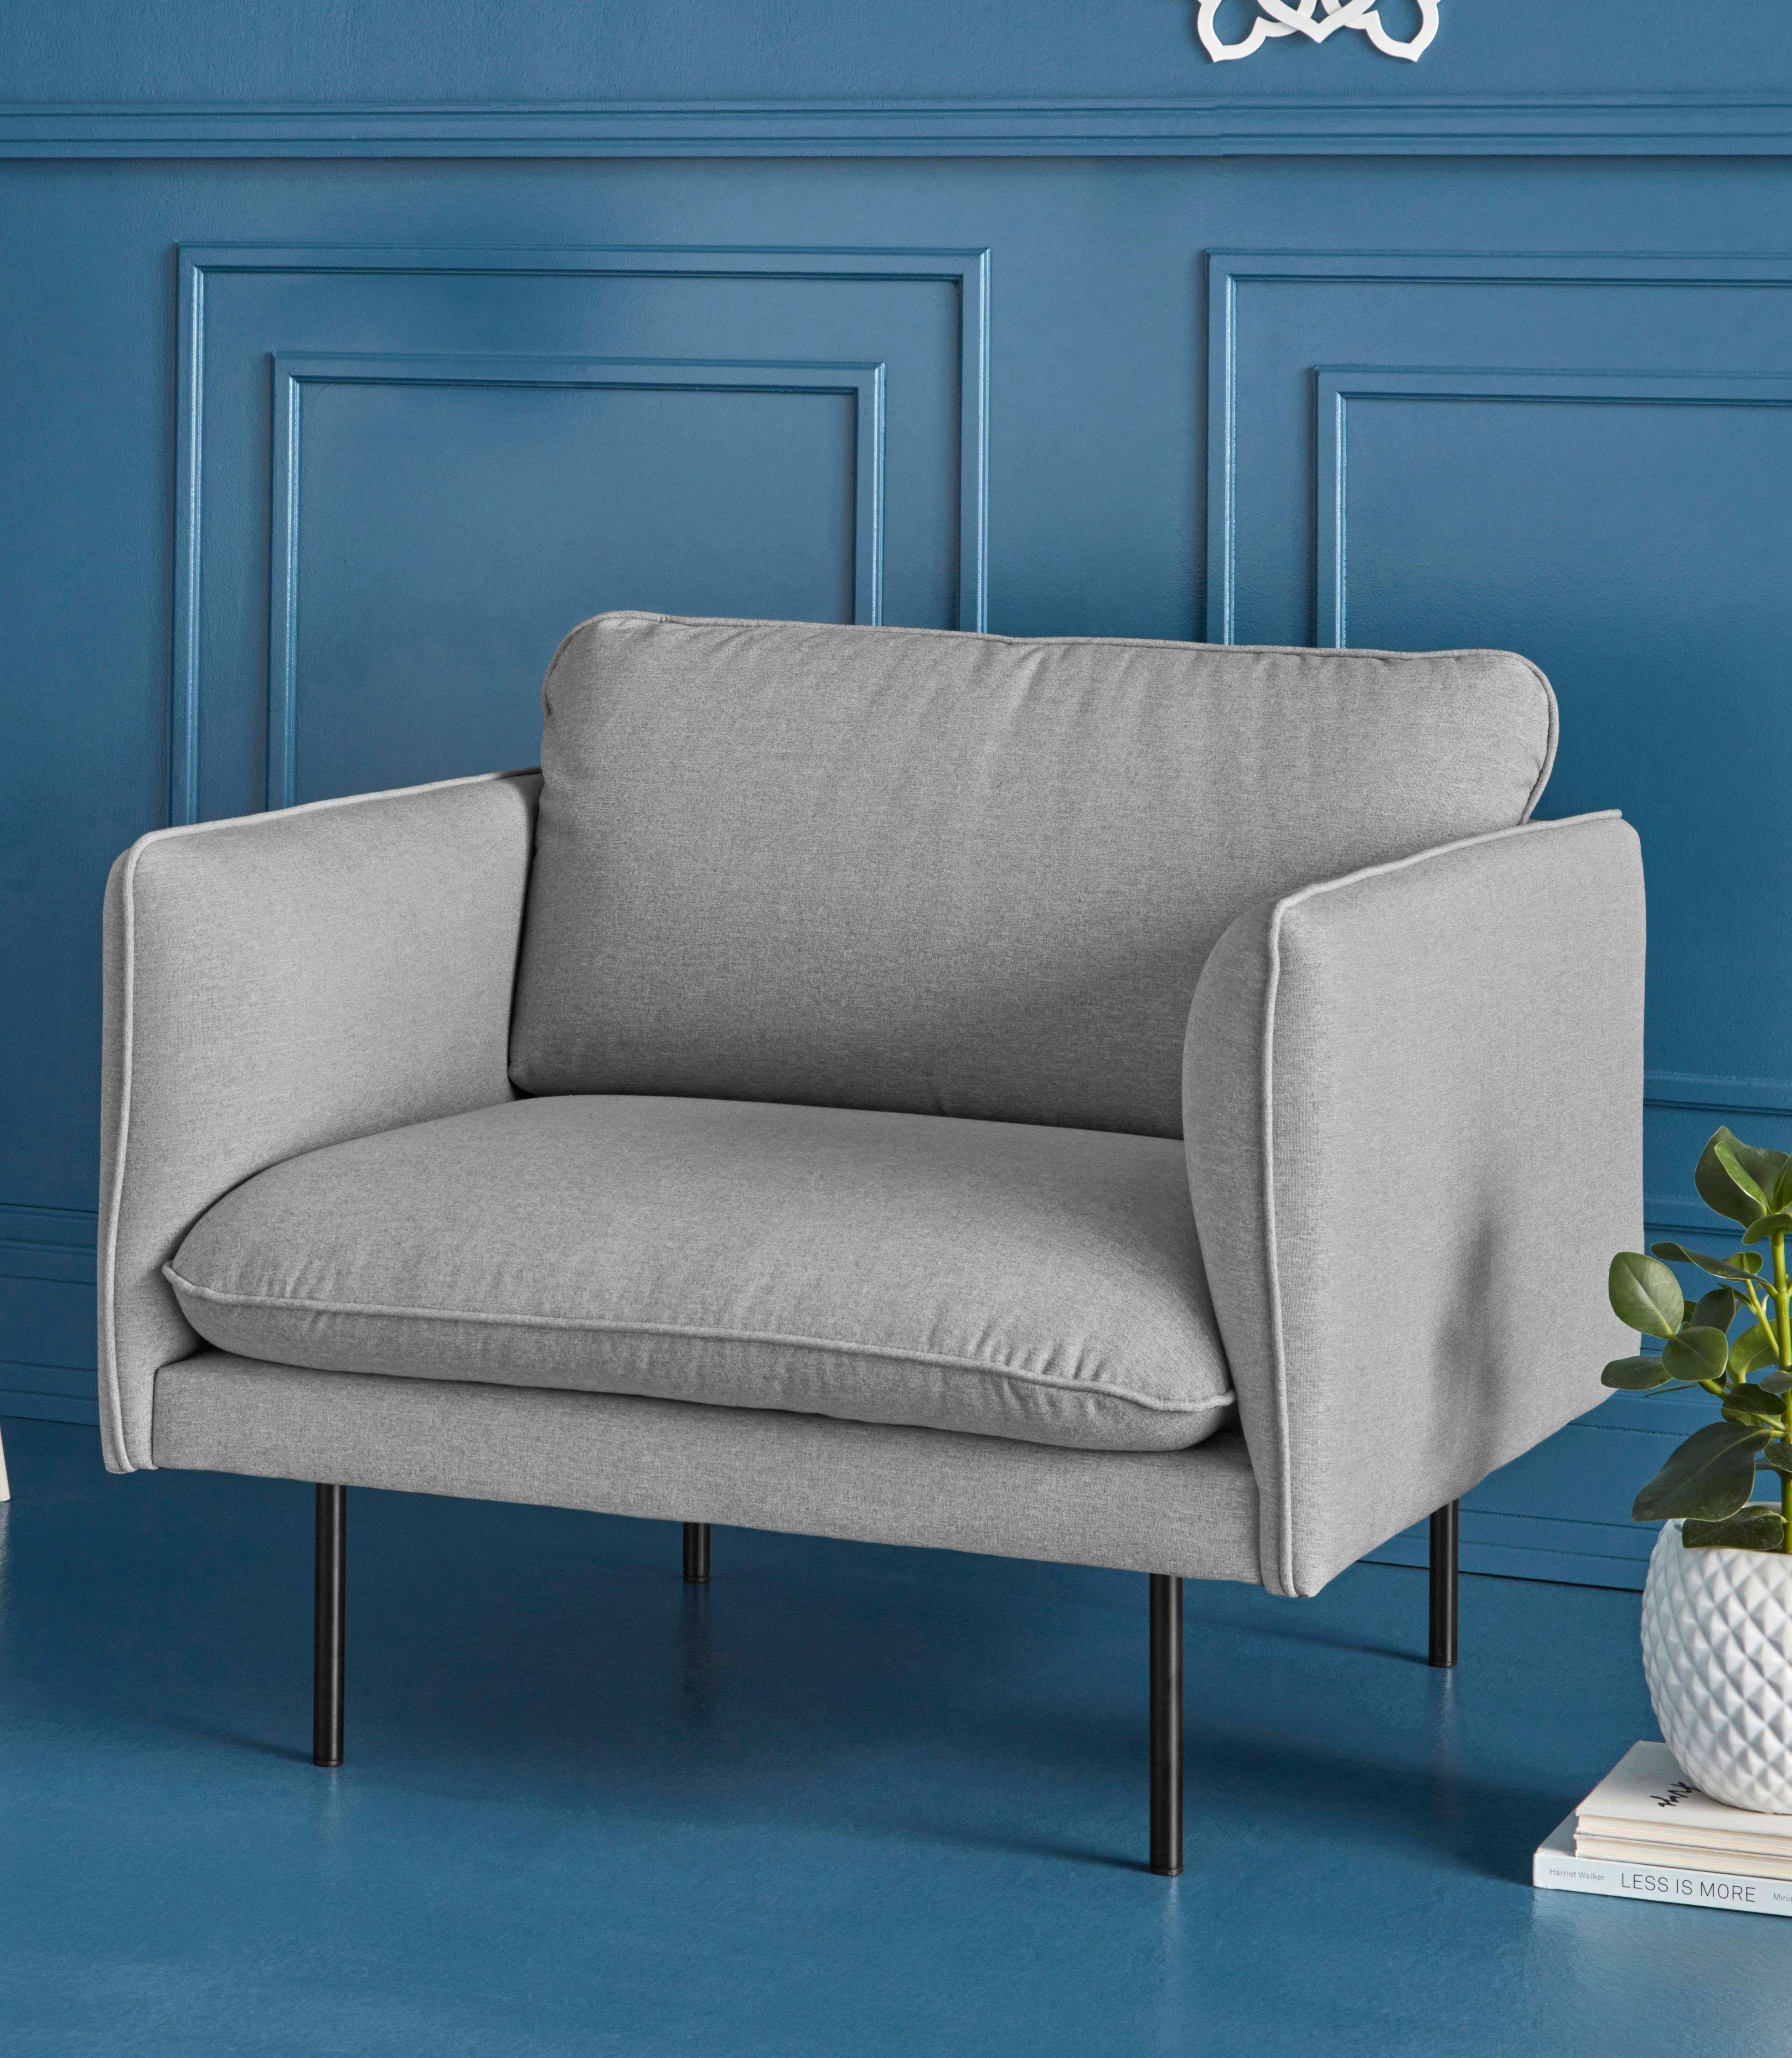 COUCH ♥ Fauteuil Levon in een moderne look, met metalen poten, couch favorieten